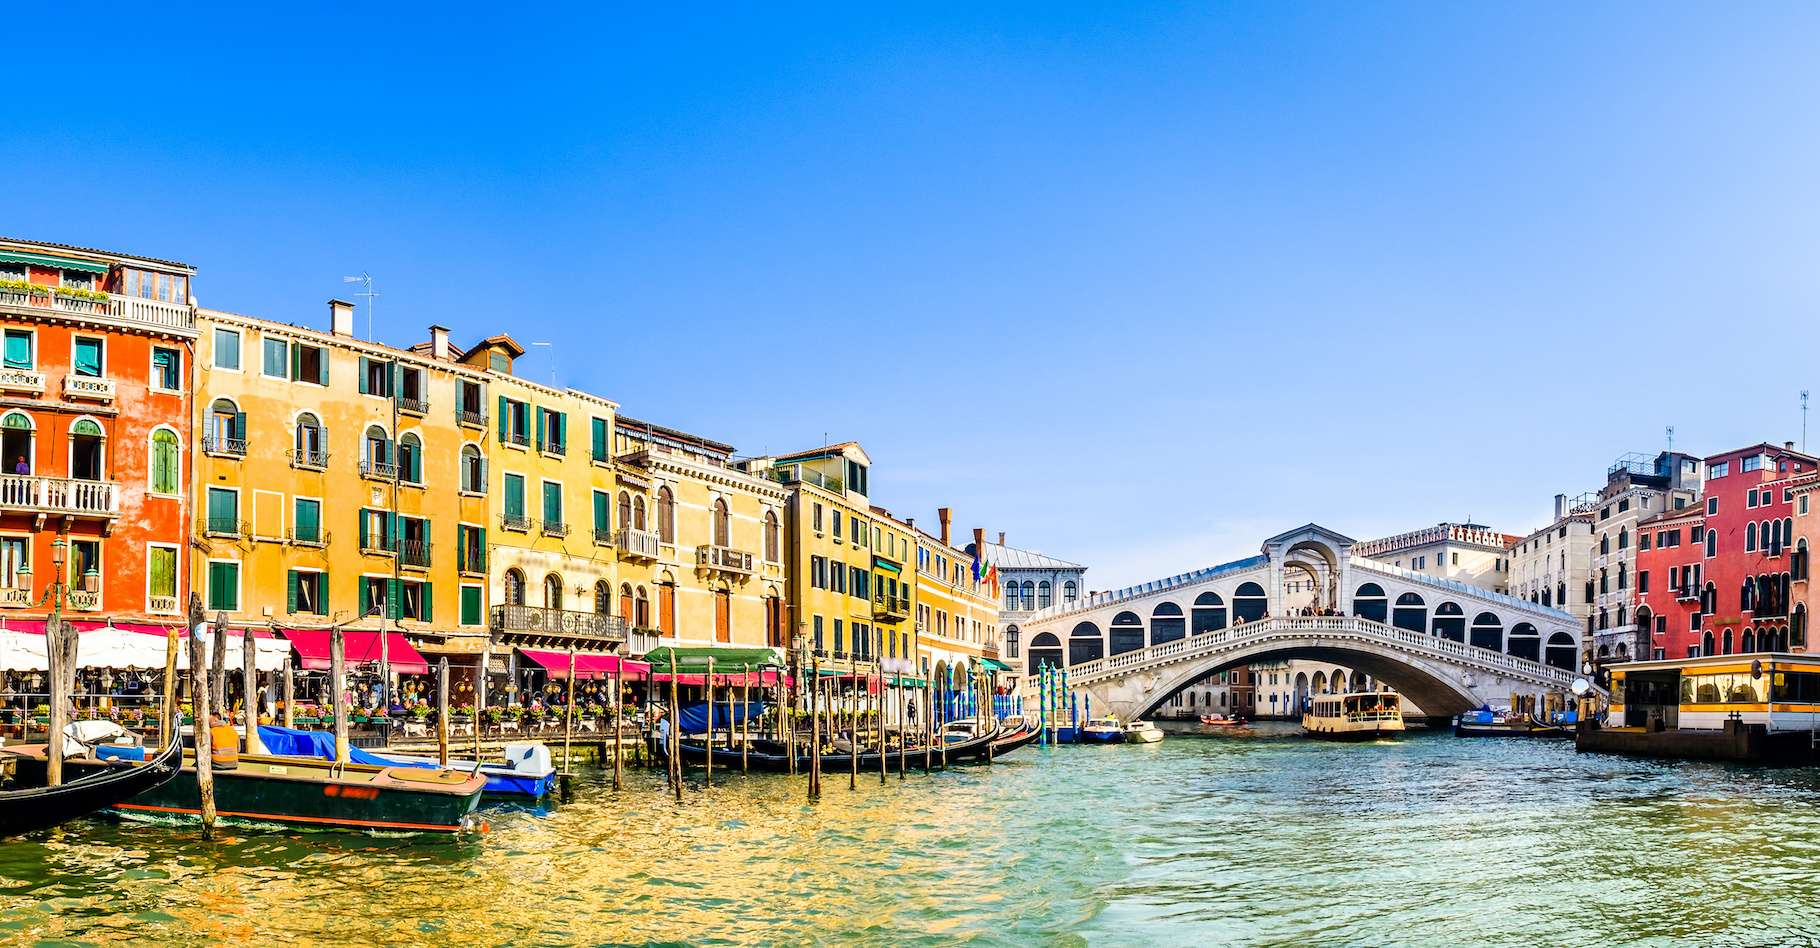 Venise : La cité souhaite développer un avenir durable pour le tourisme